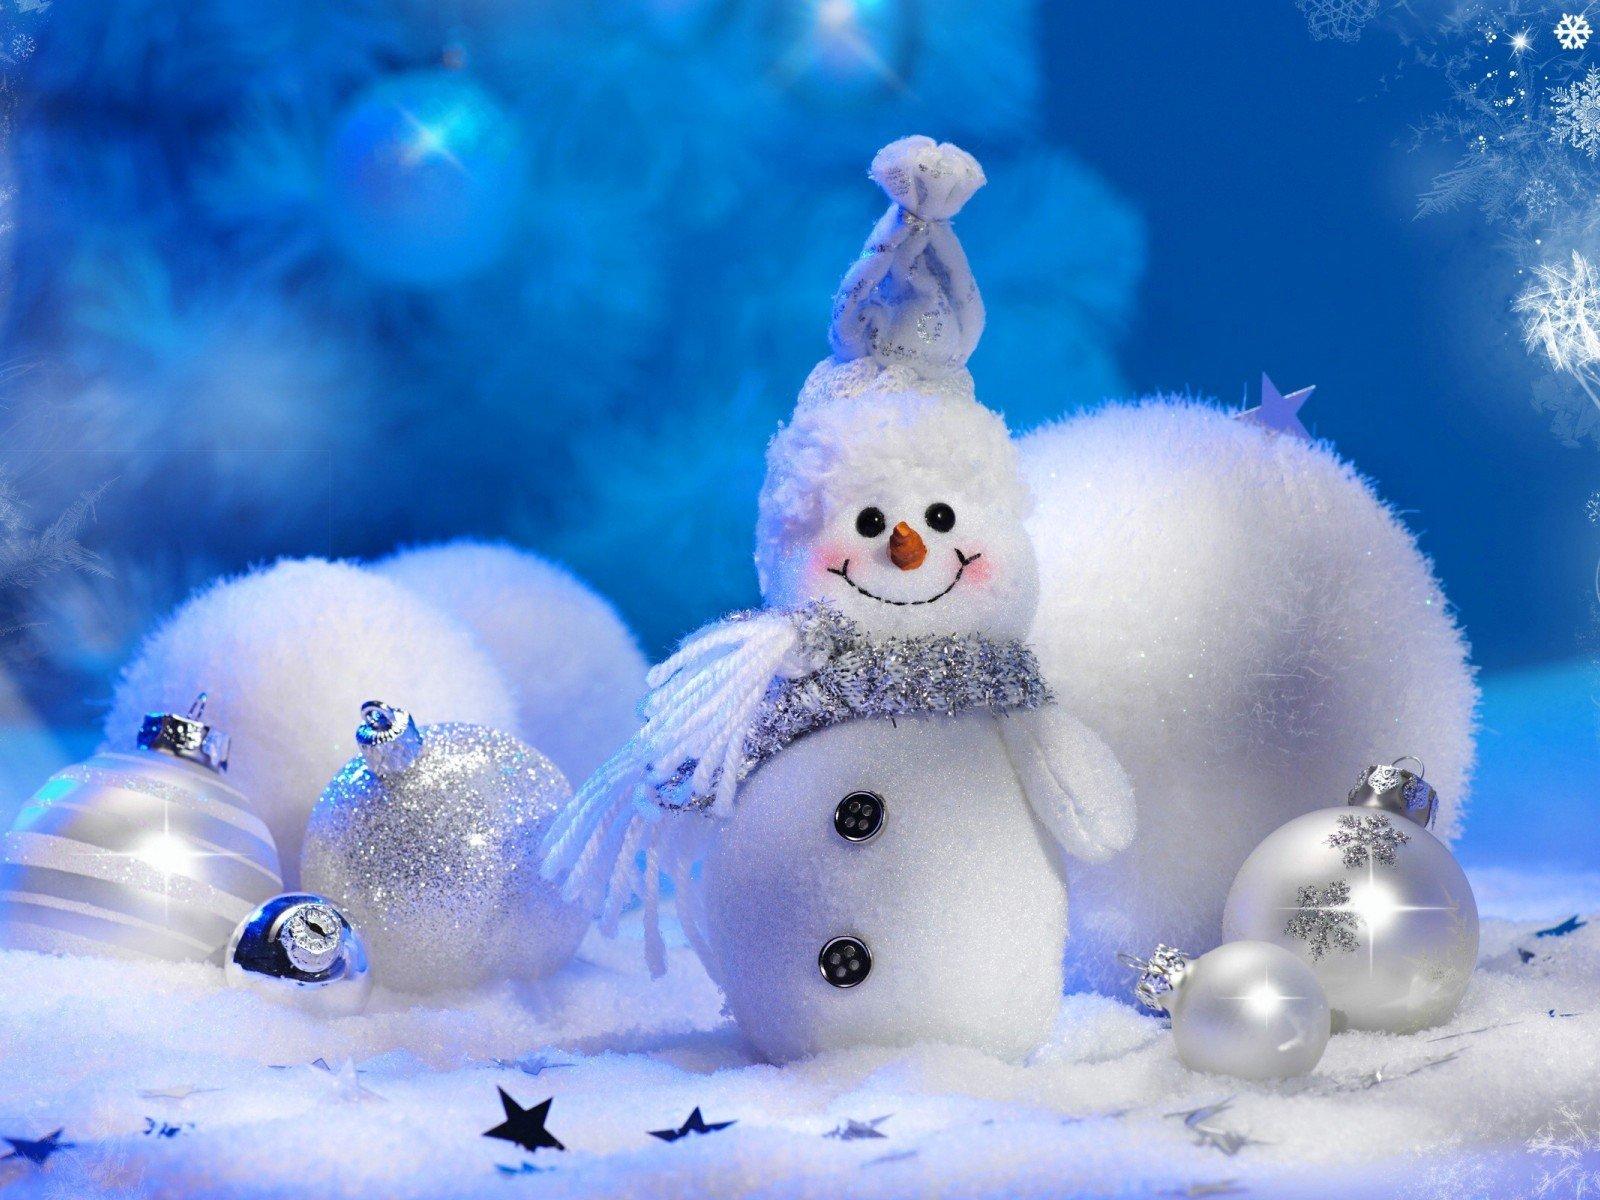 Snowman toys balls celebration new year winter snowflakes